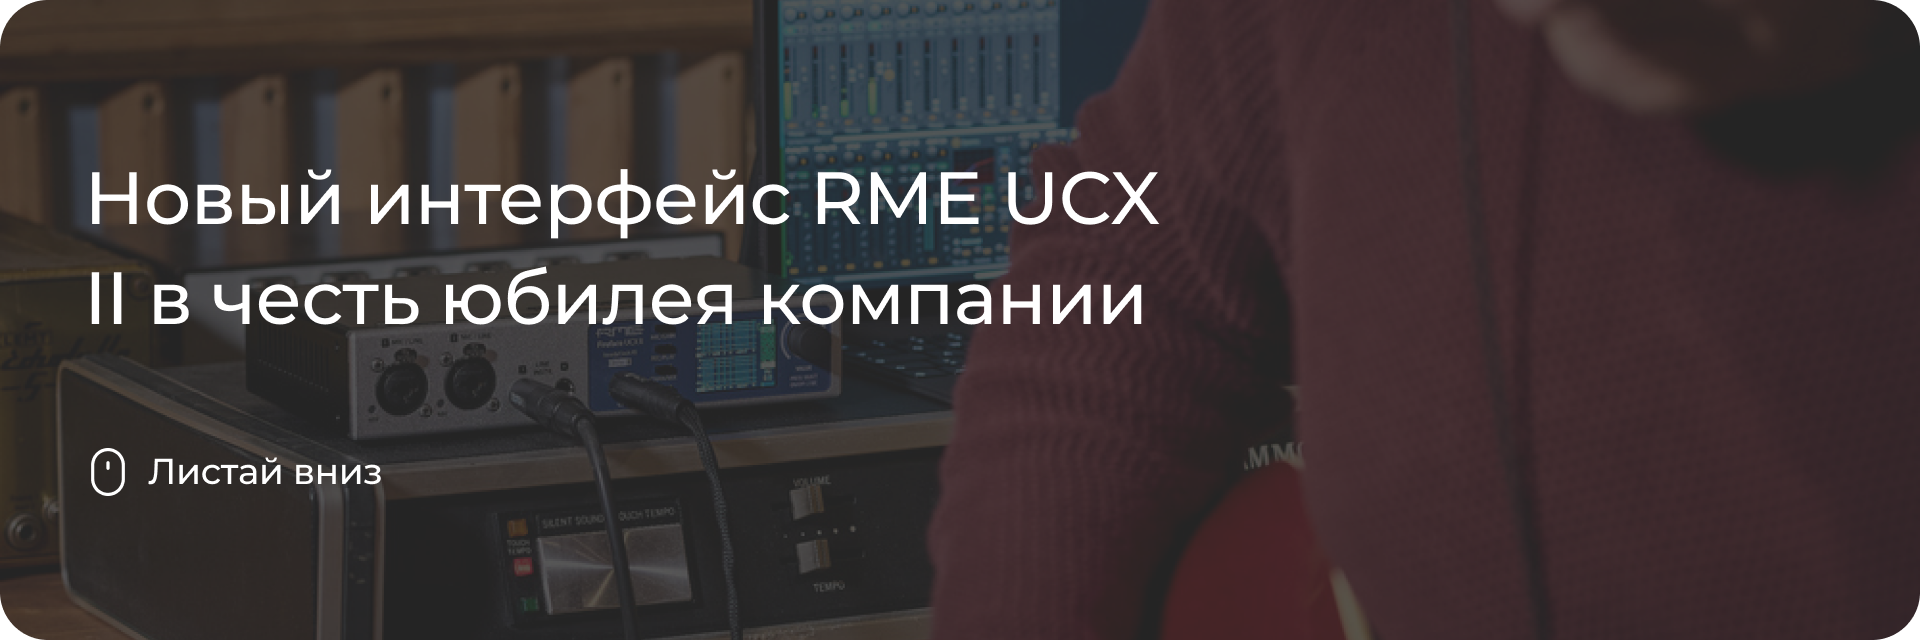 Новый интерфейс RME UCX II